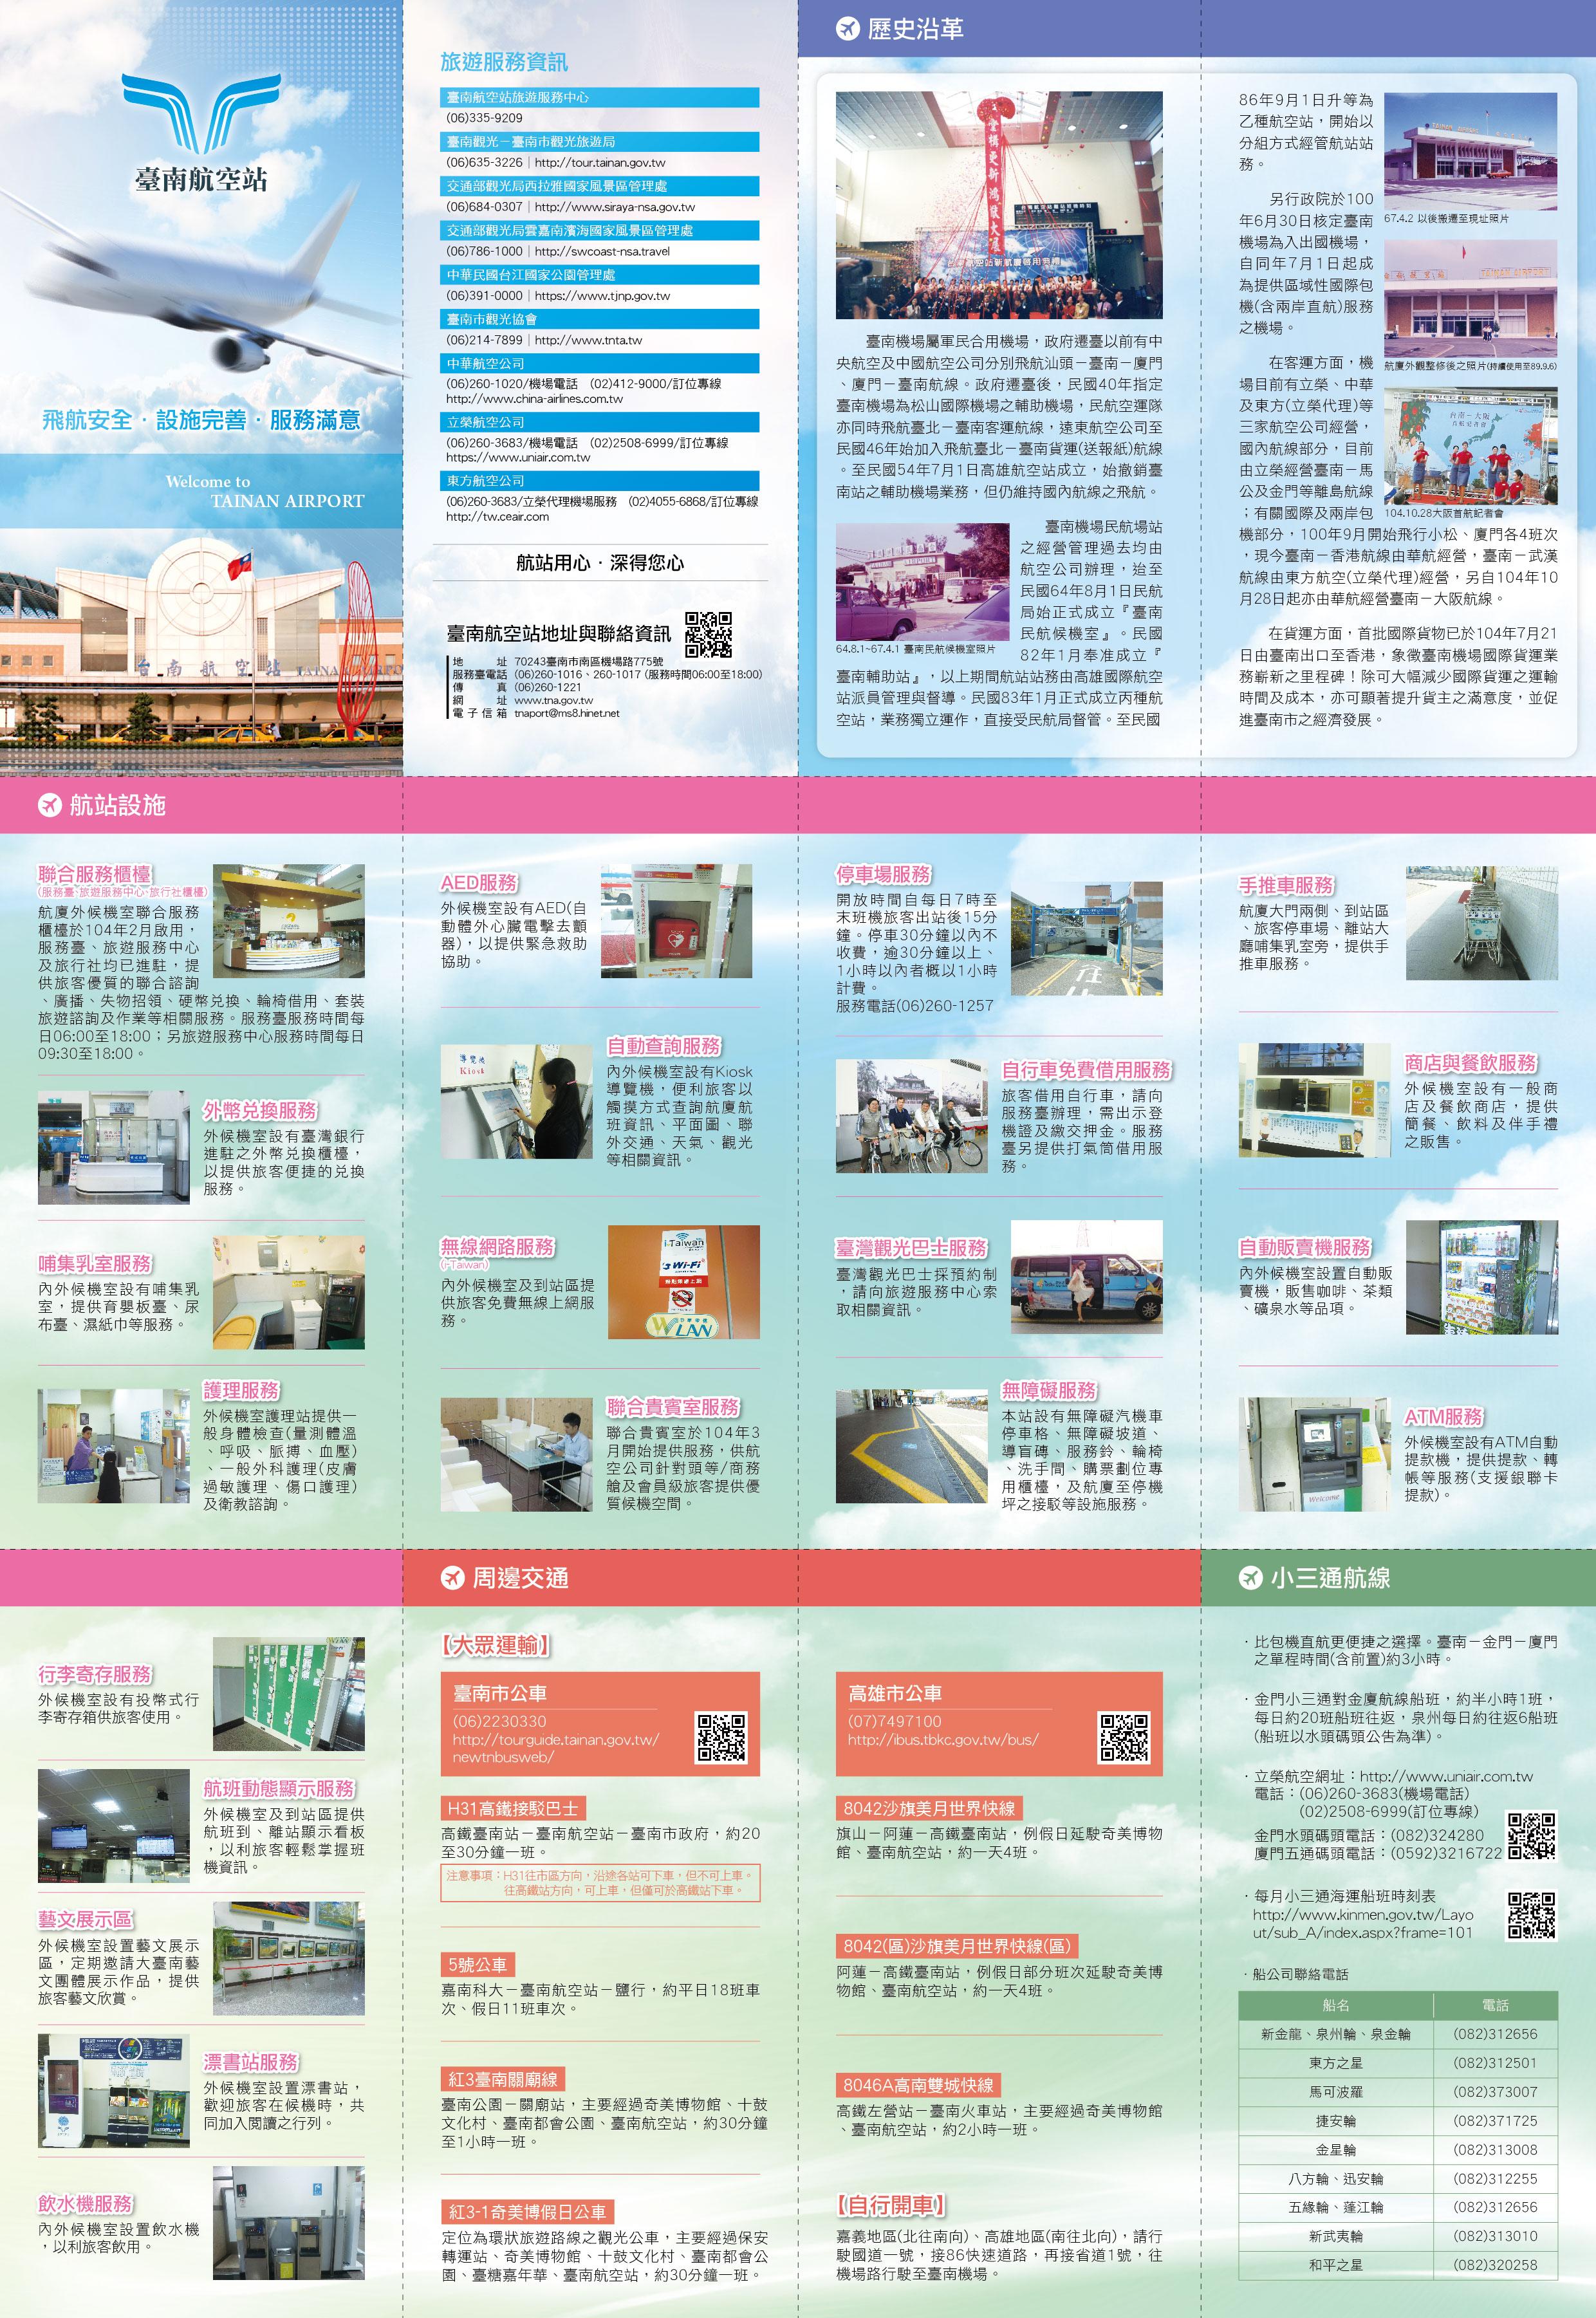 臺南航空站旅客服務指南摺頁1